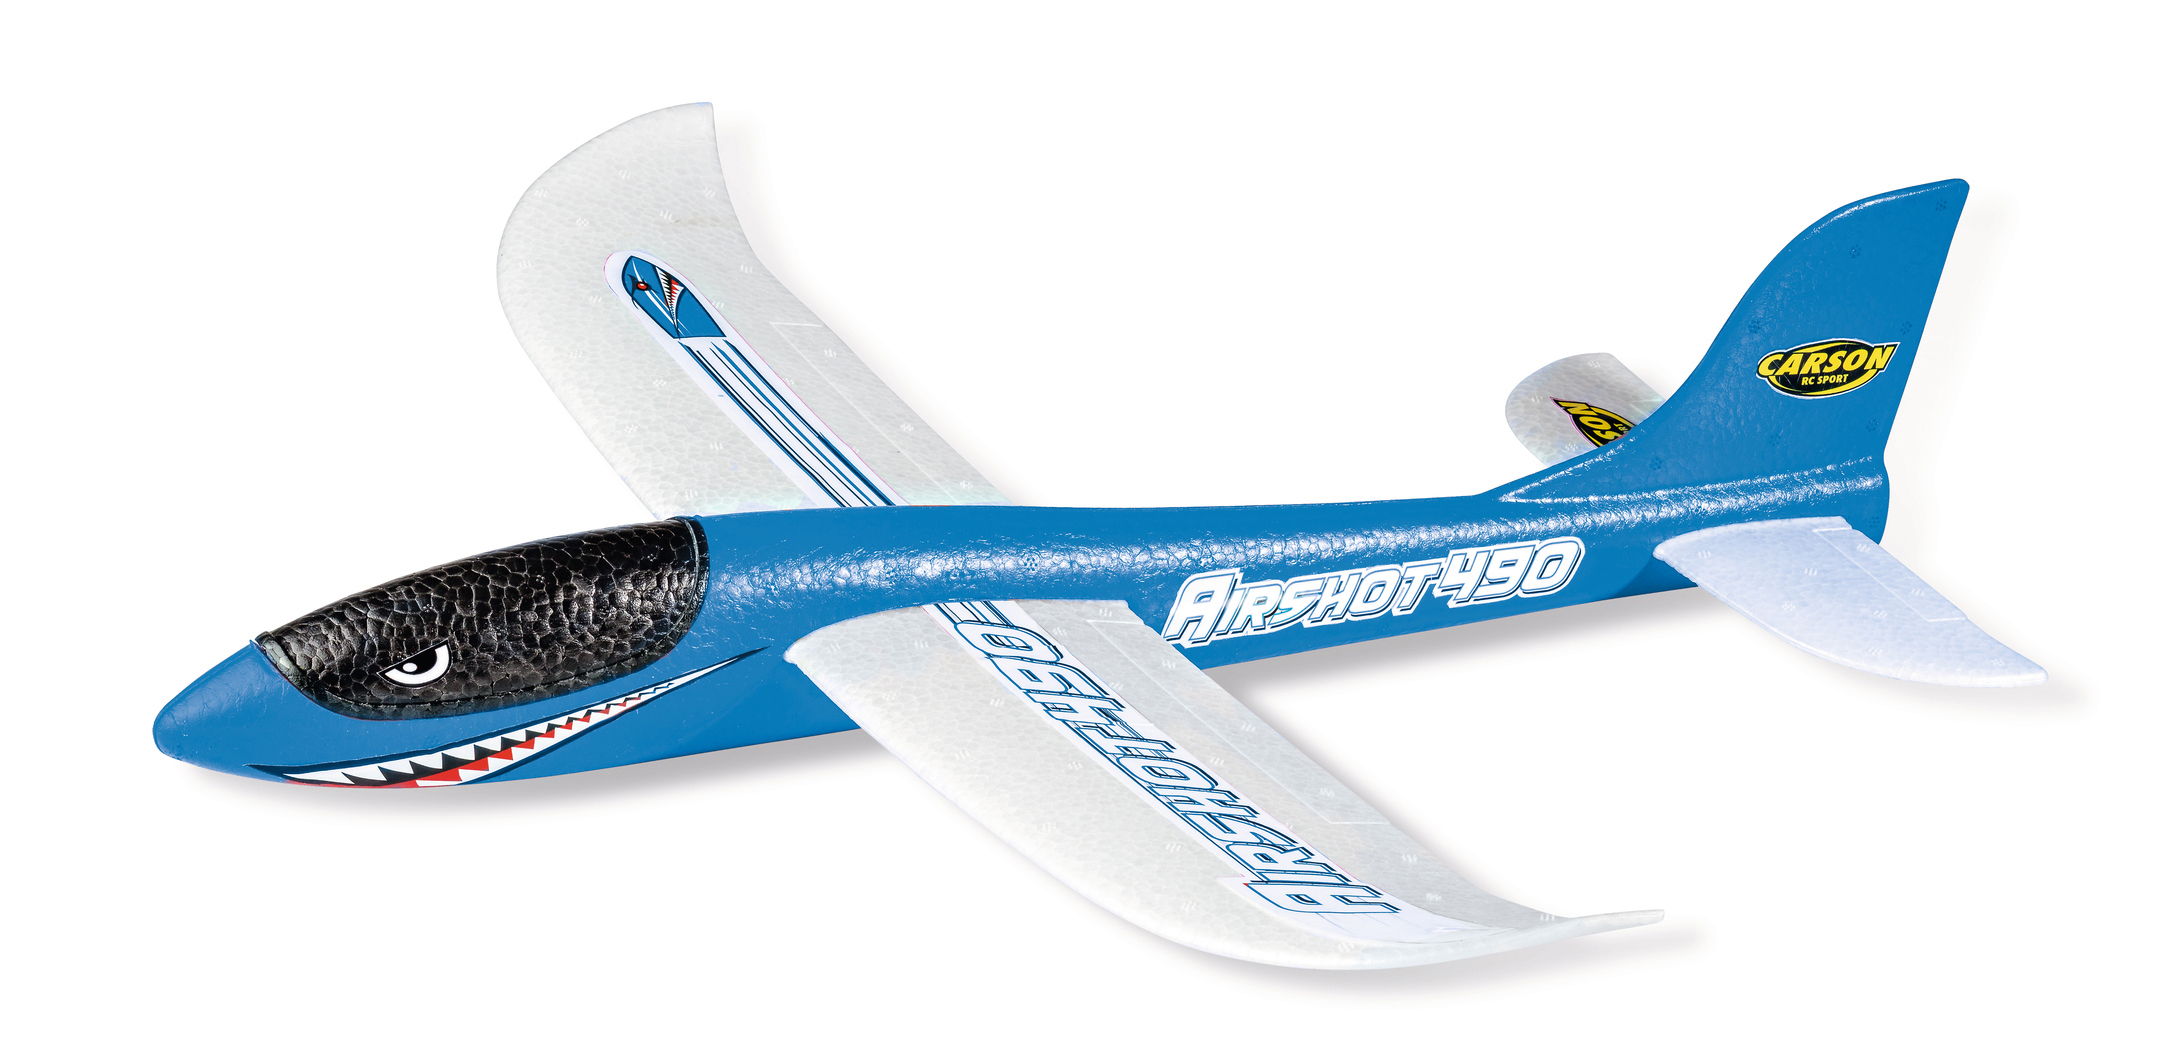 CARSON Wurfgleiter Airshot Blau Spielzeugwurfgleiter, 490